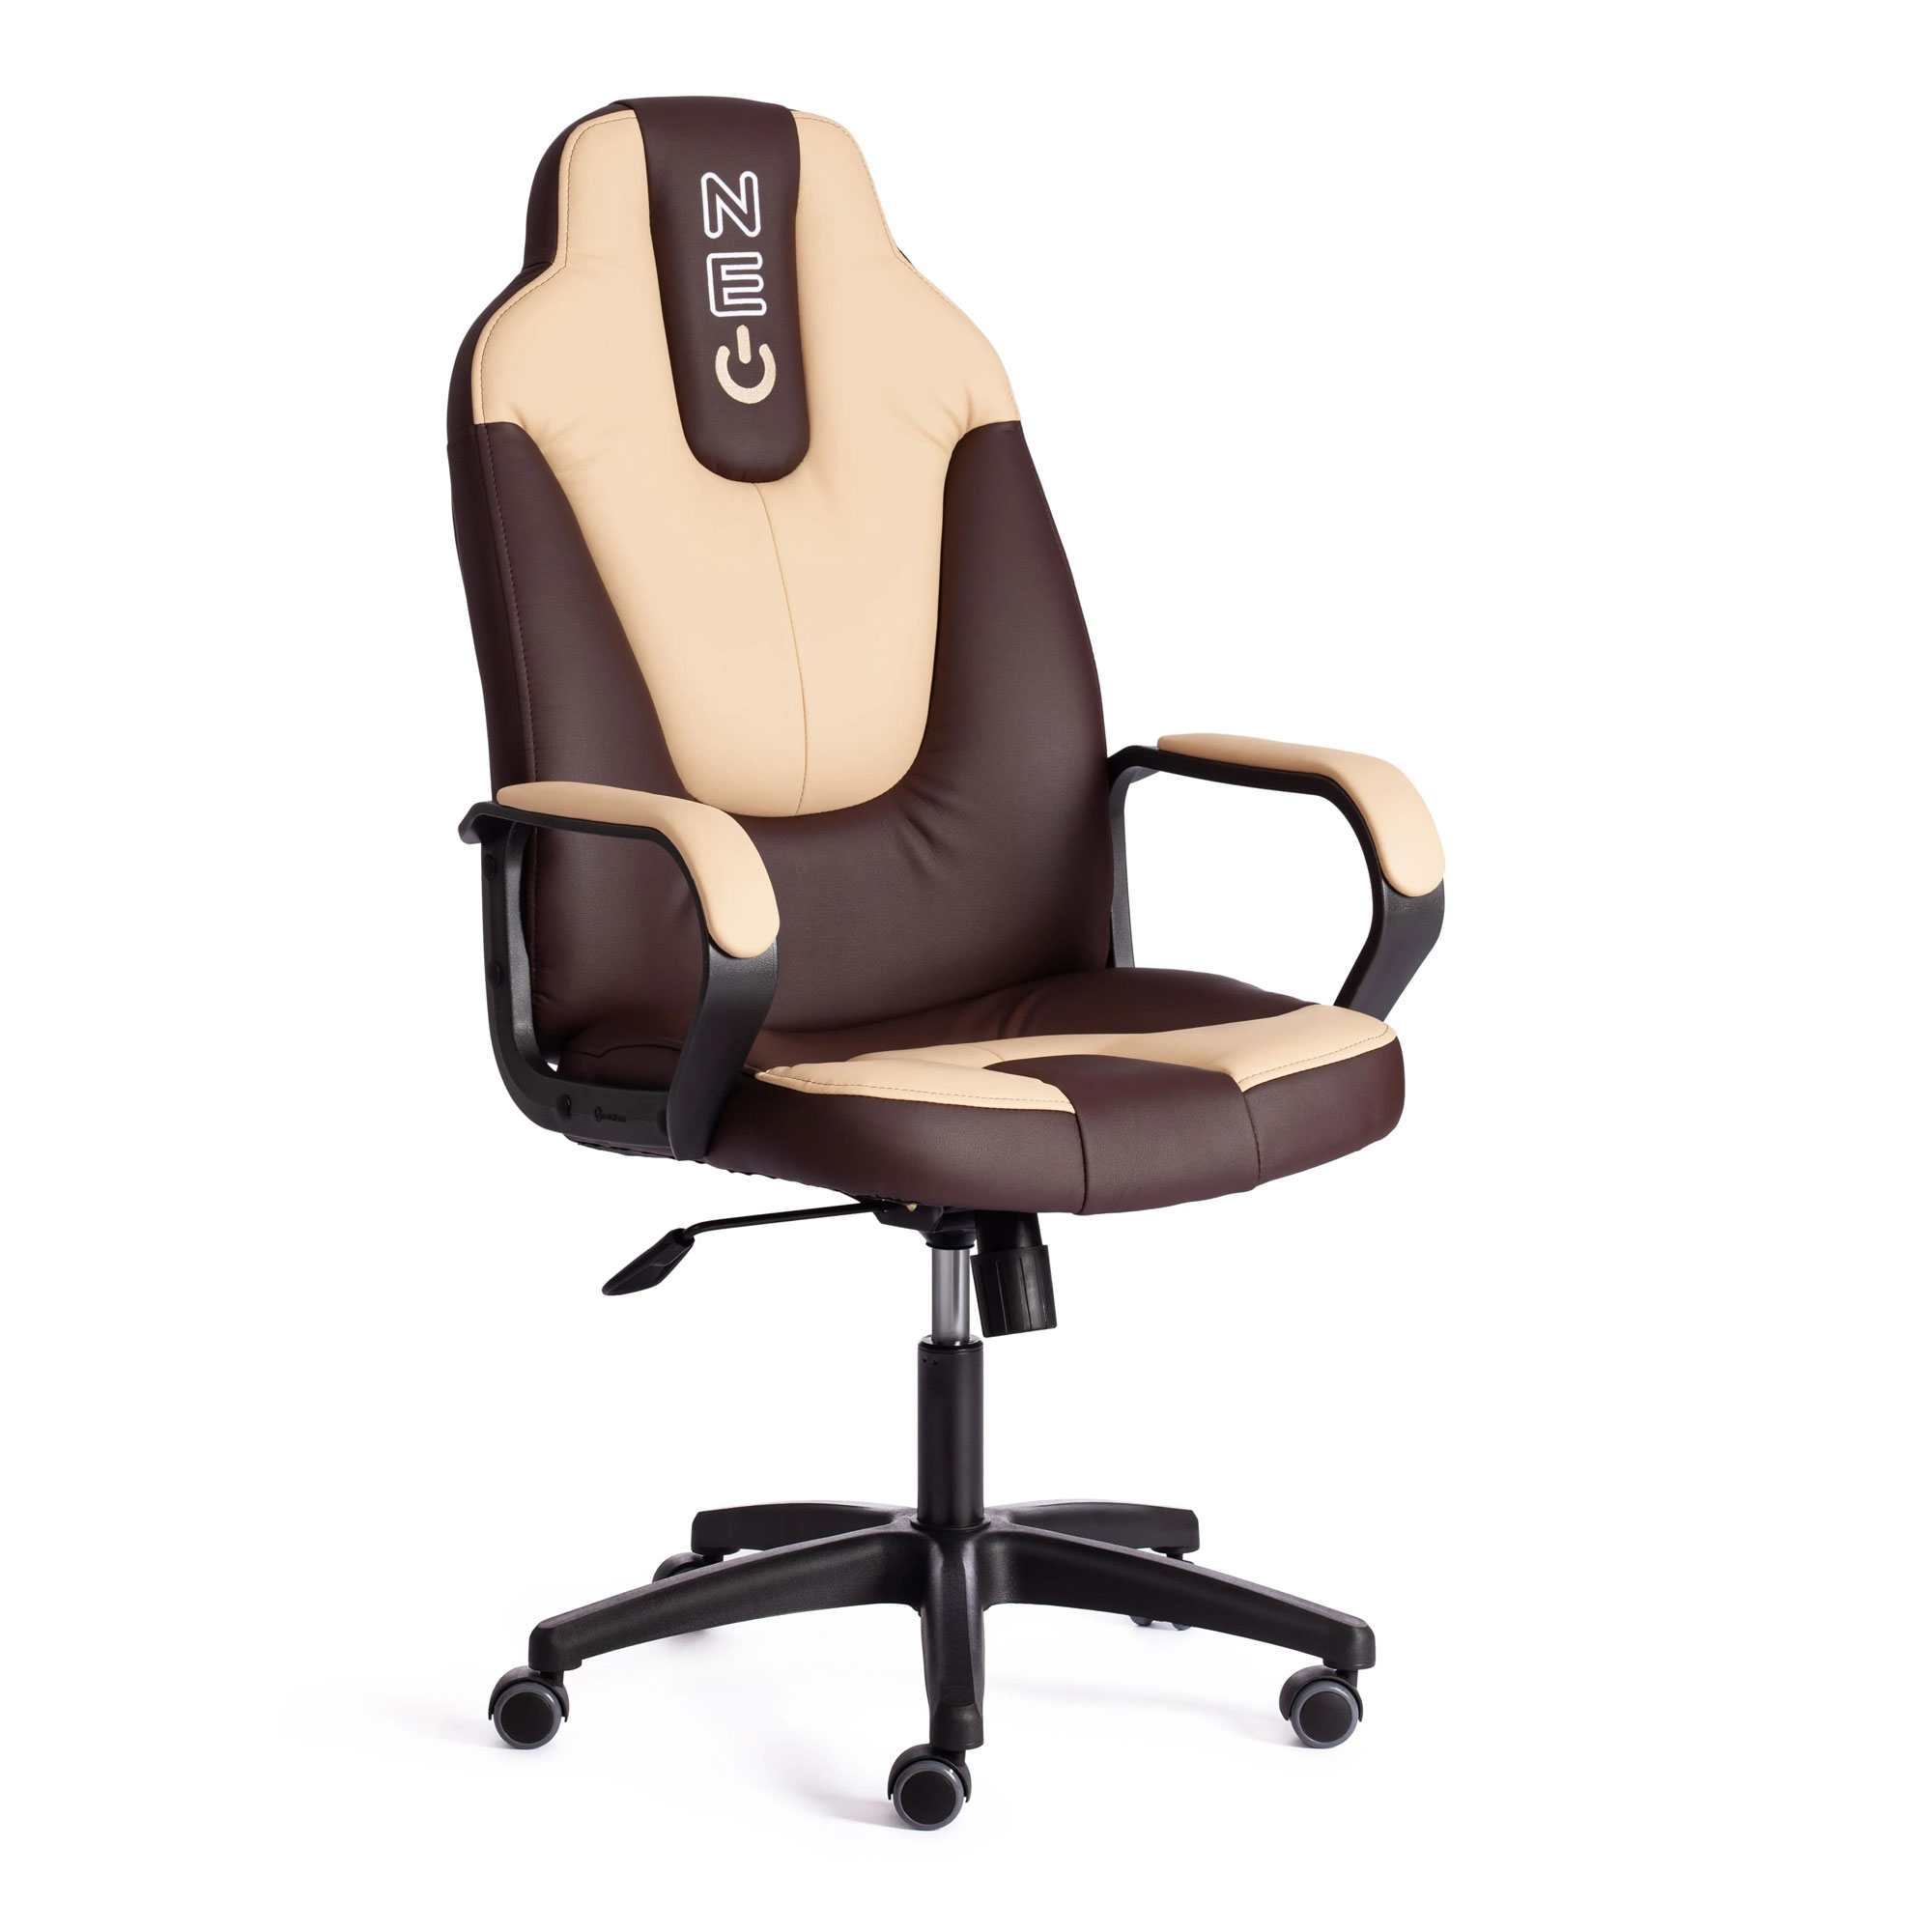 Кресло компьютерное TC Neo искусственная кожа коричневое с бежевым 64х49х122 см кресло компьютерное tc driver искусственная кожа чёрное 55х49х126 см